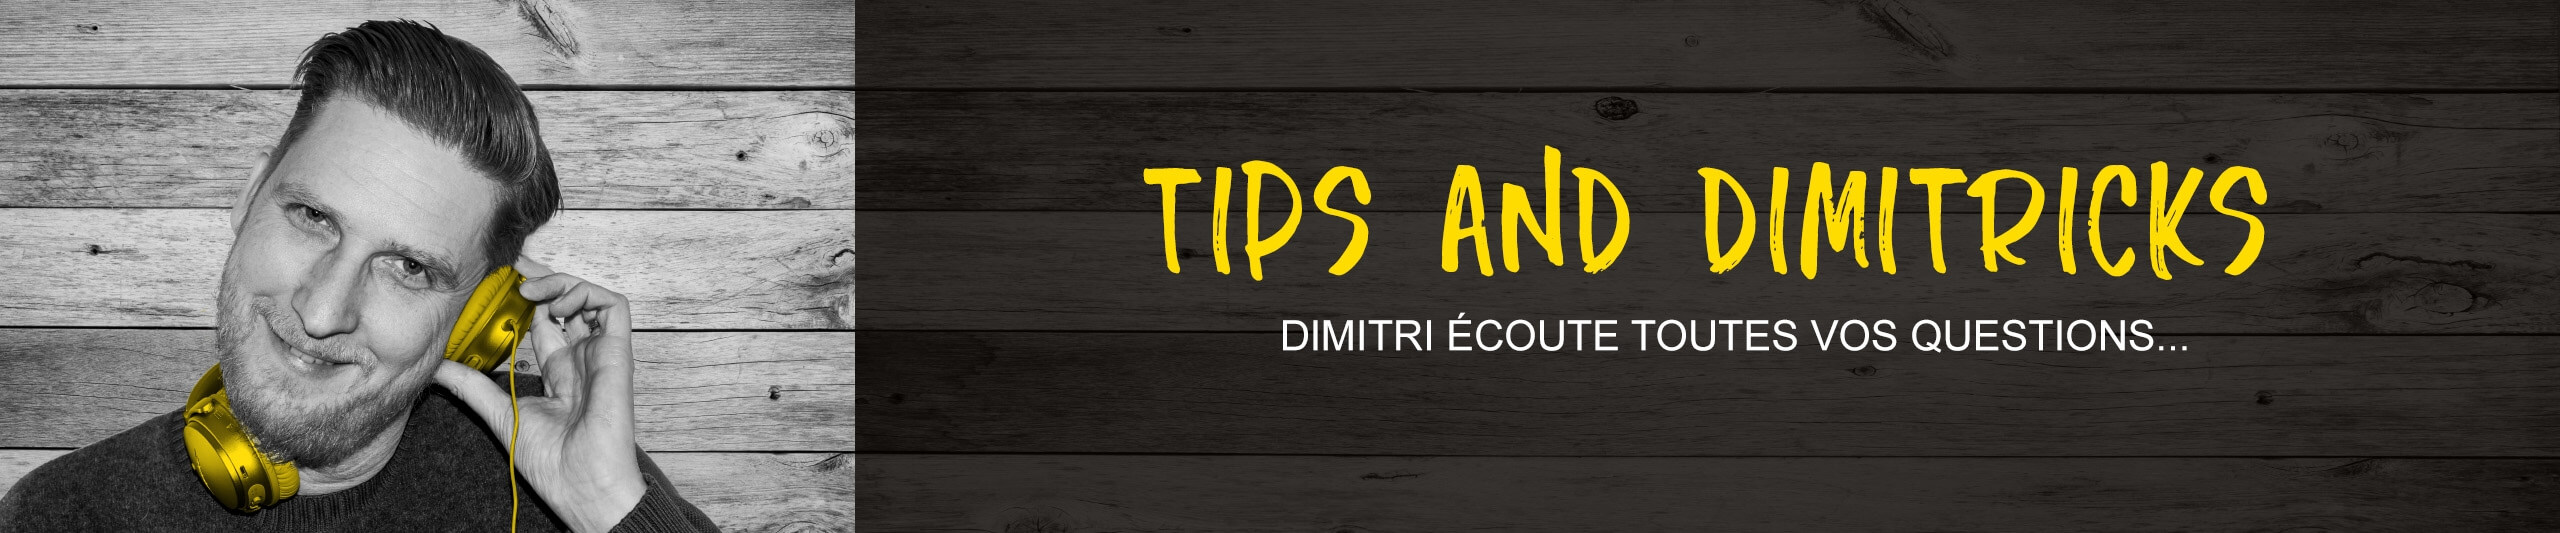 Tips et Dimitricks - Pourquoi les taches restent-elles visible